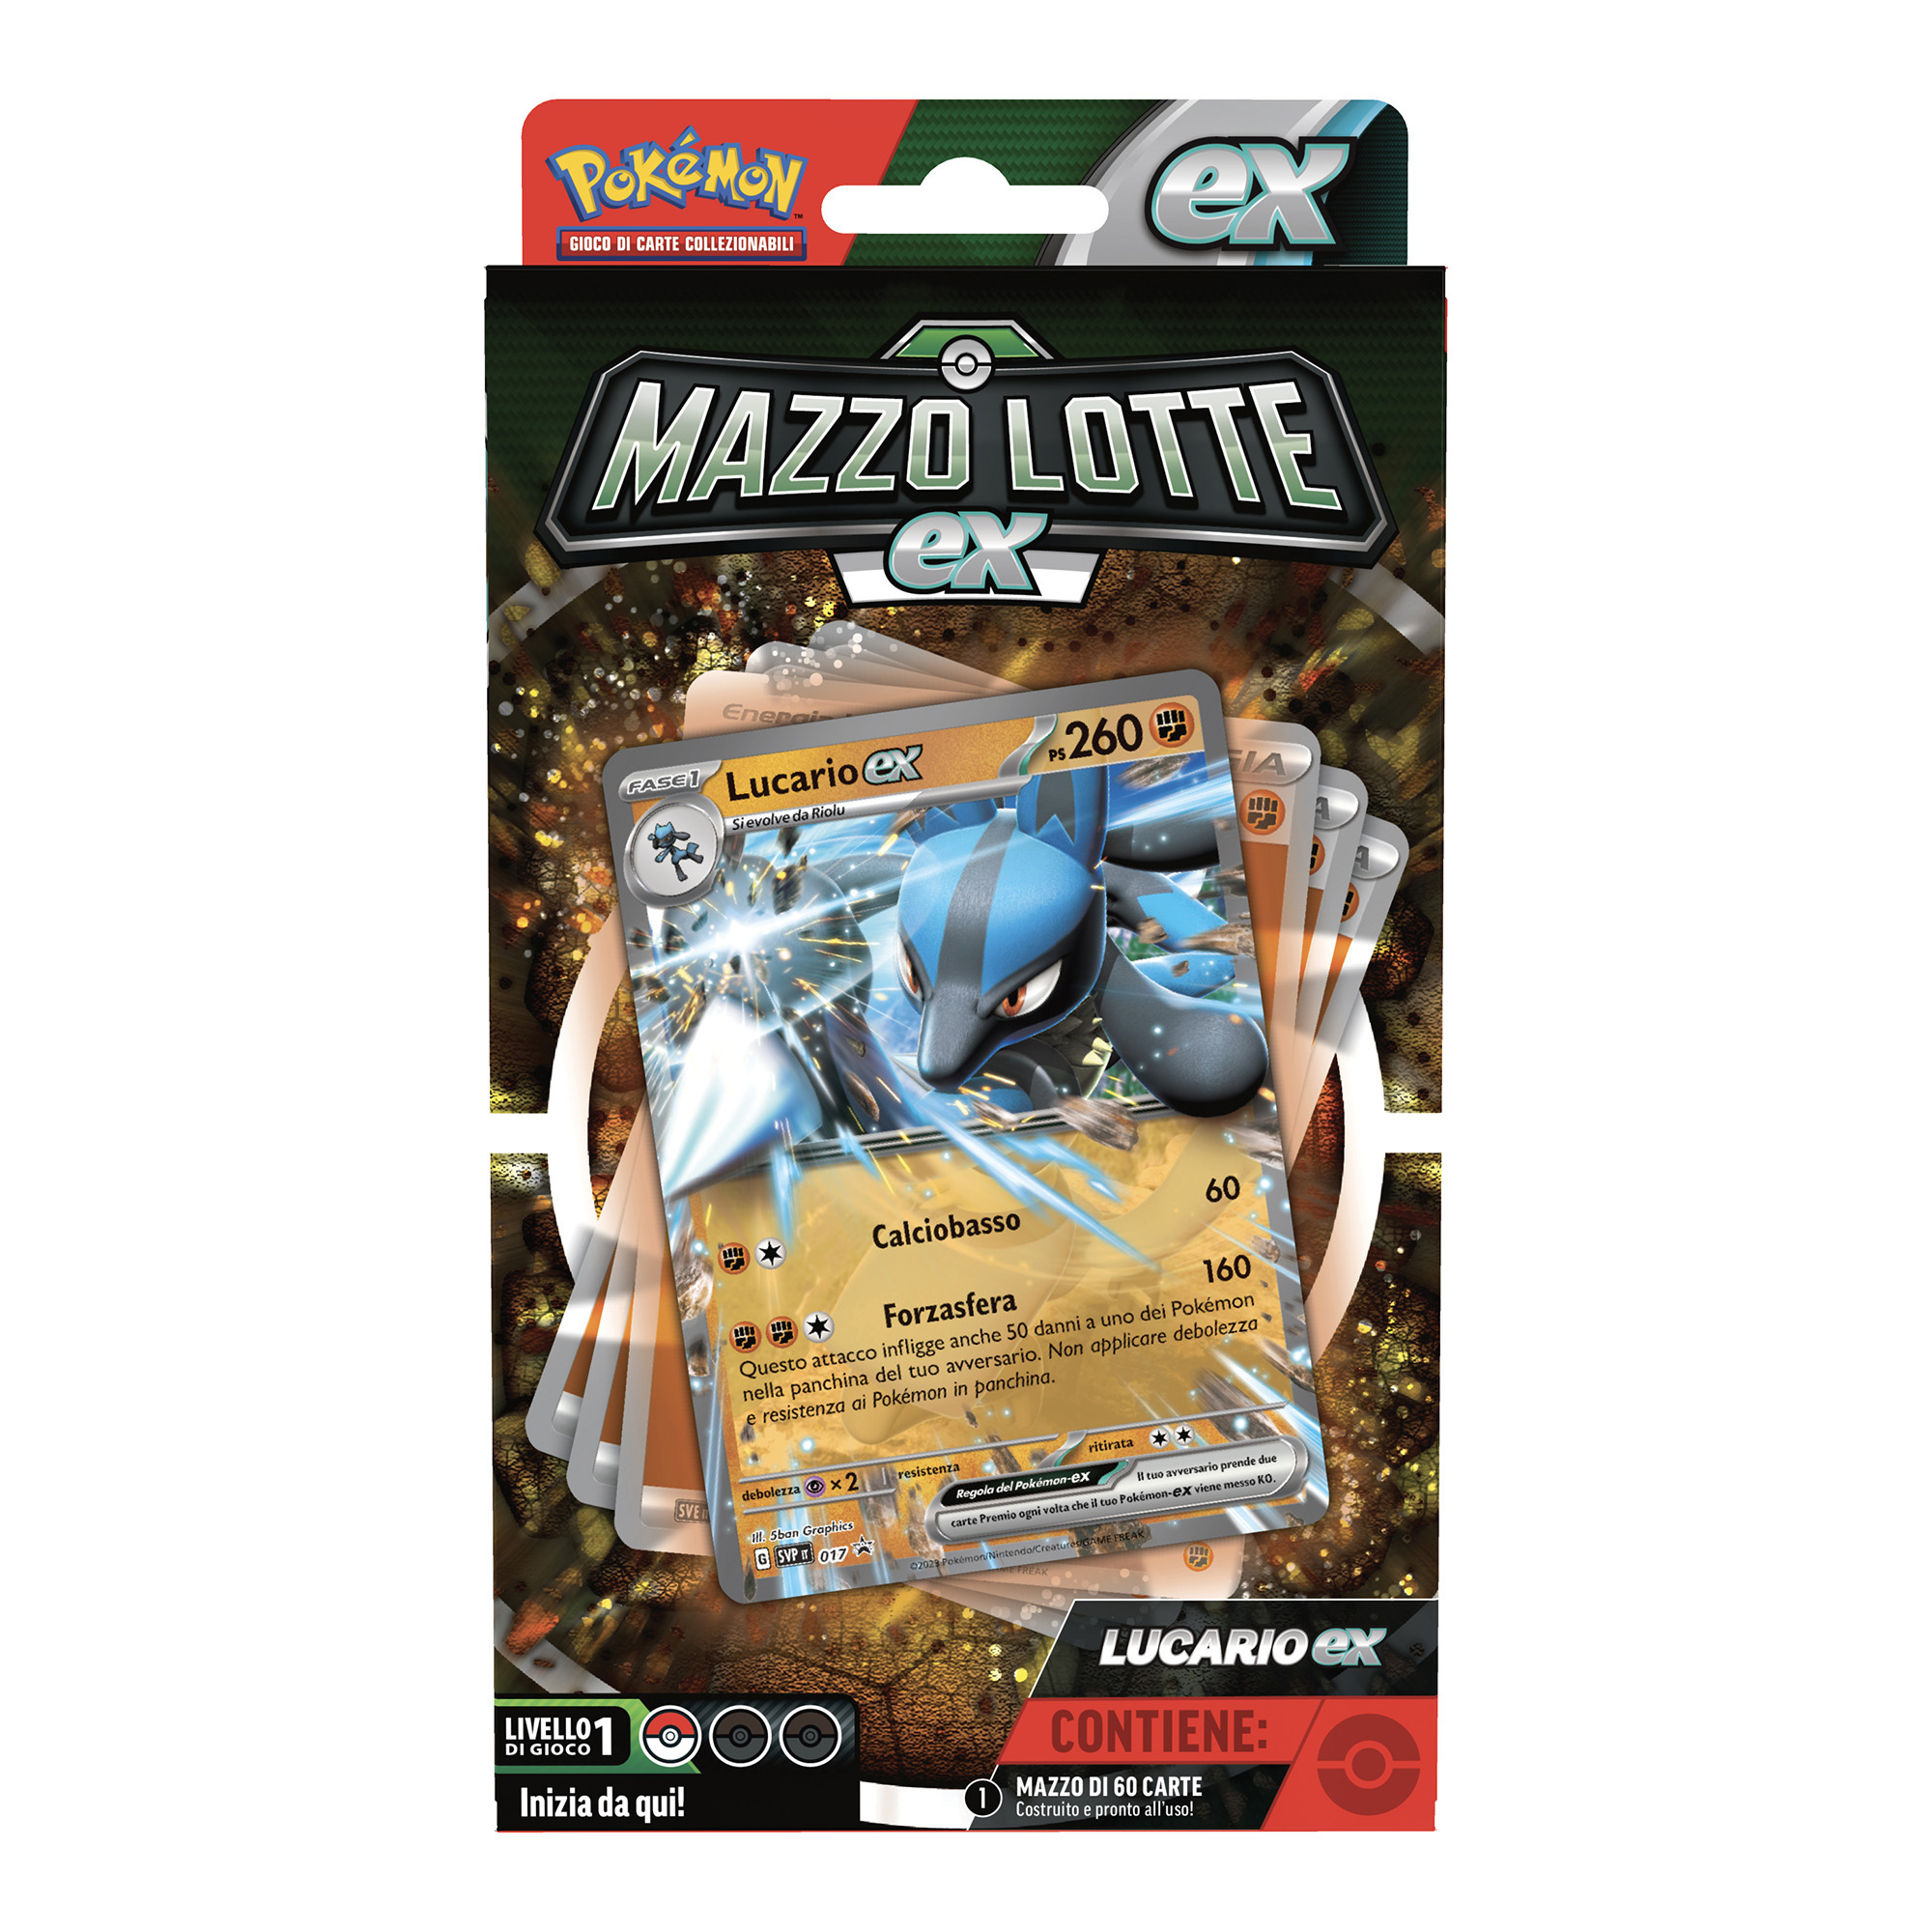 Pokémon Mazzo Lotte EX Ampharos-Ex / Lucario-Ex assortito - Pokémon